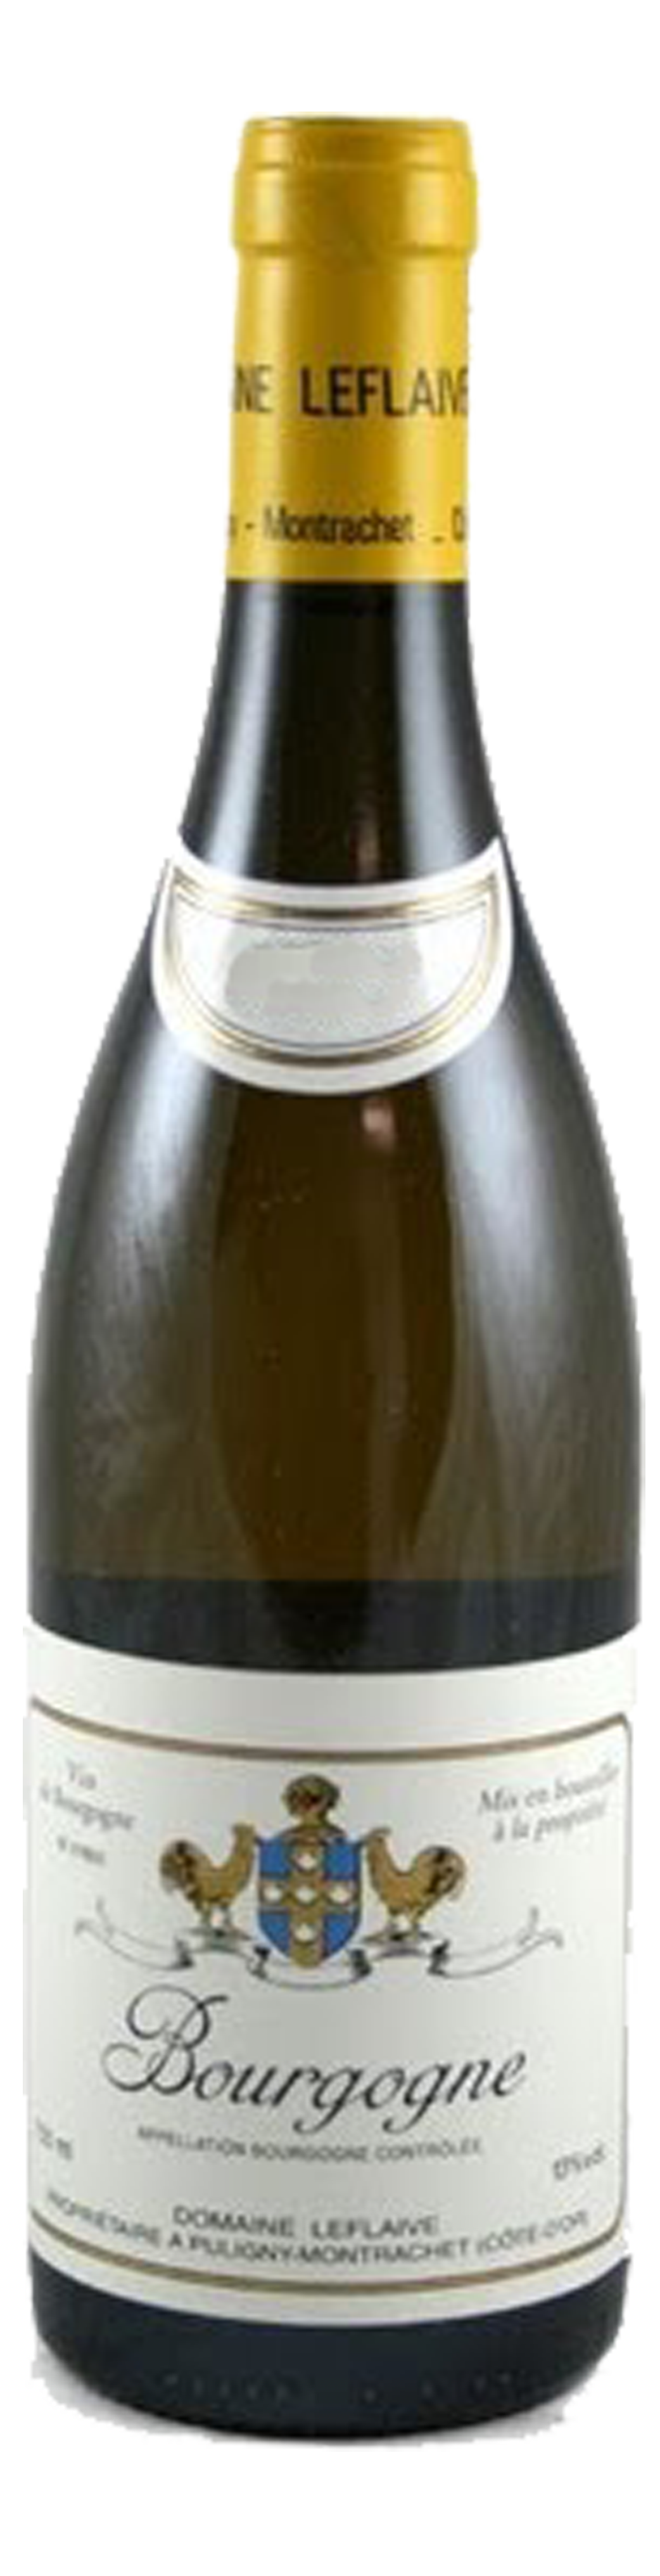 Bottle shot of 2012 Bourgogne Blanc